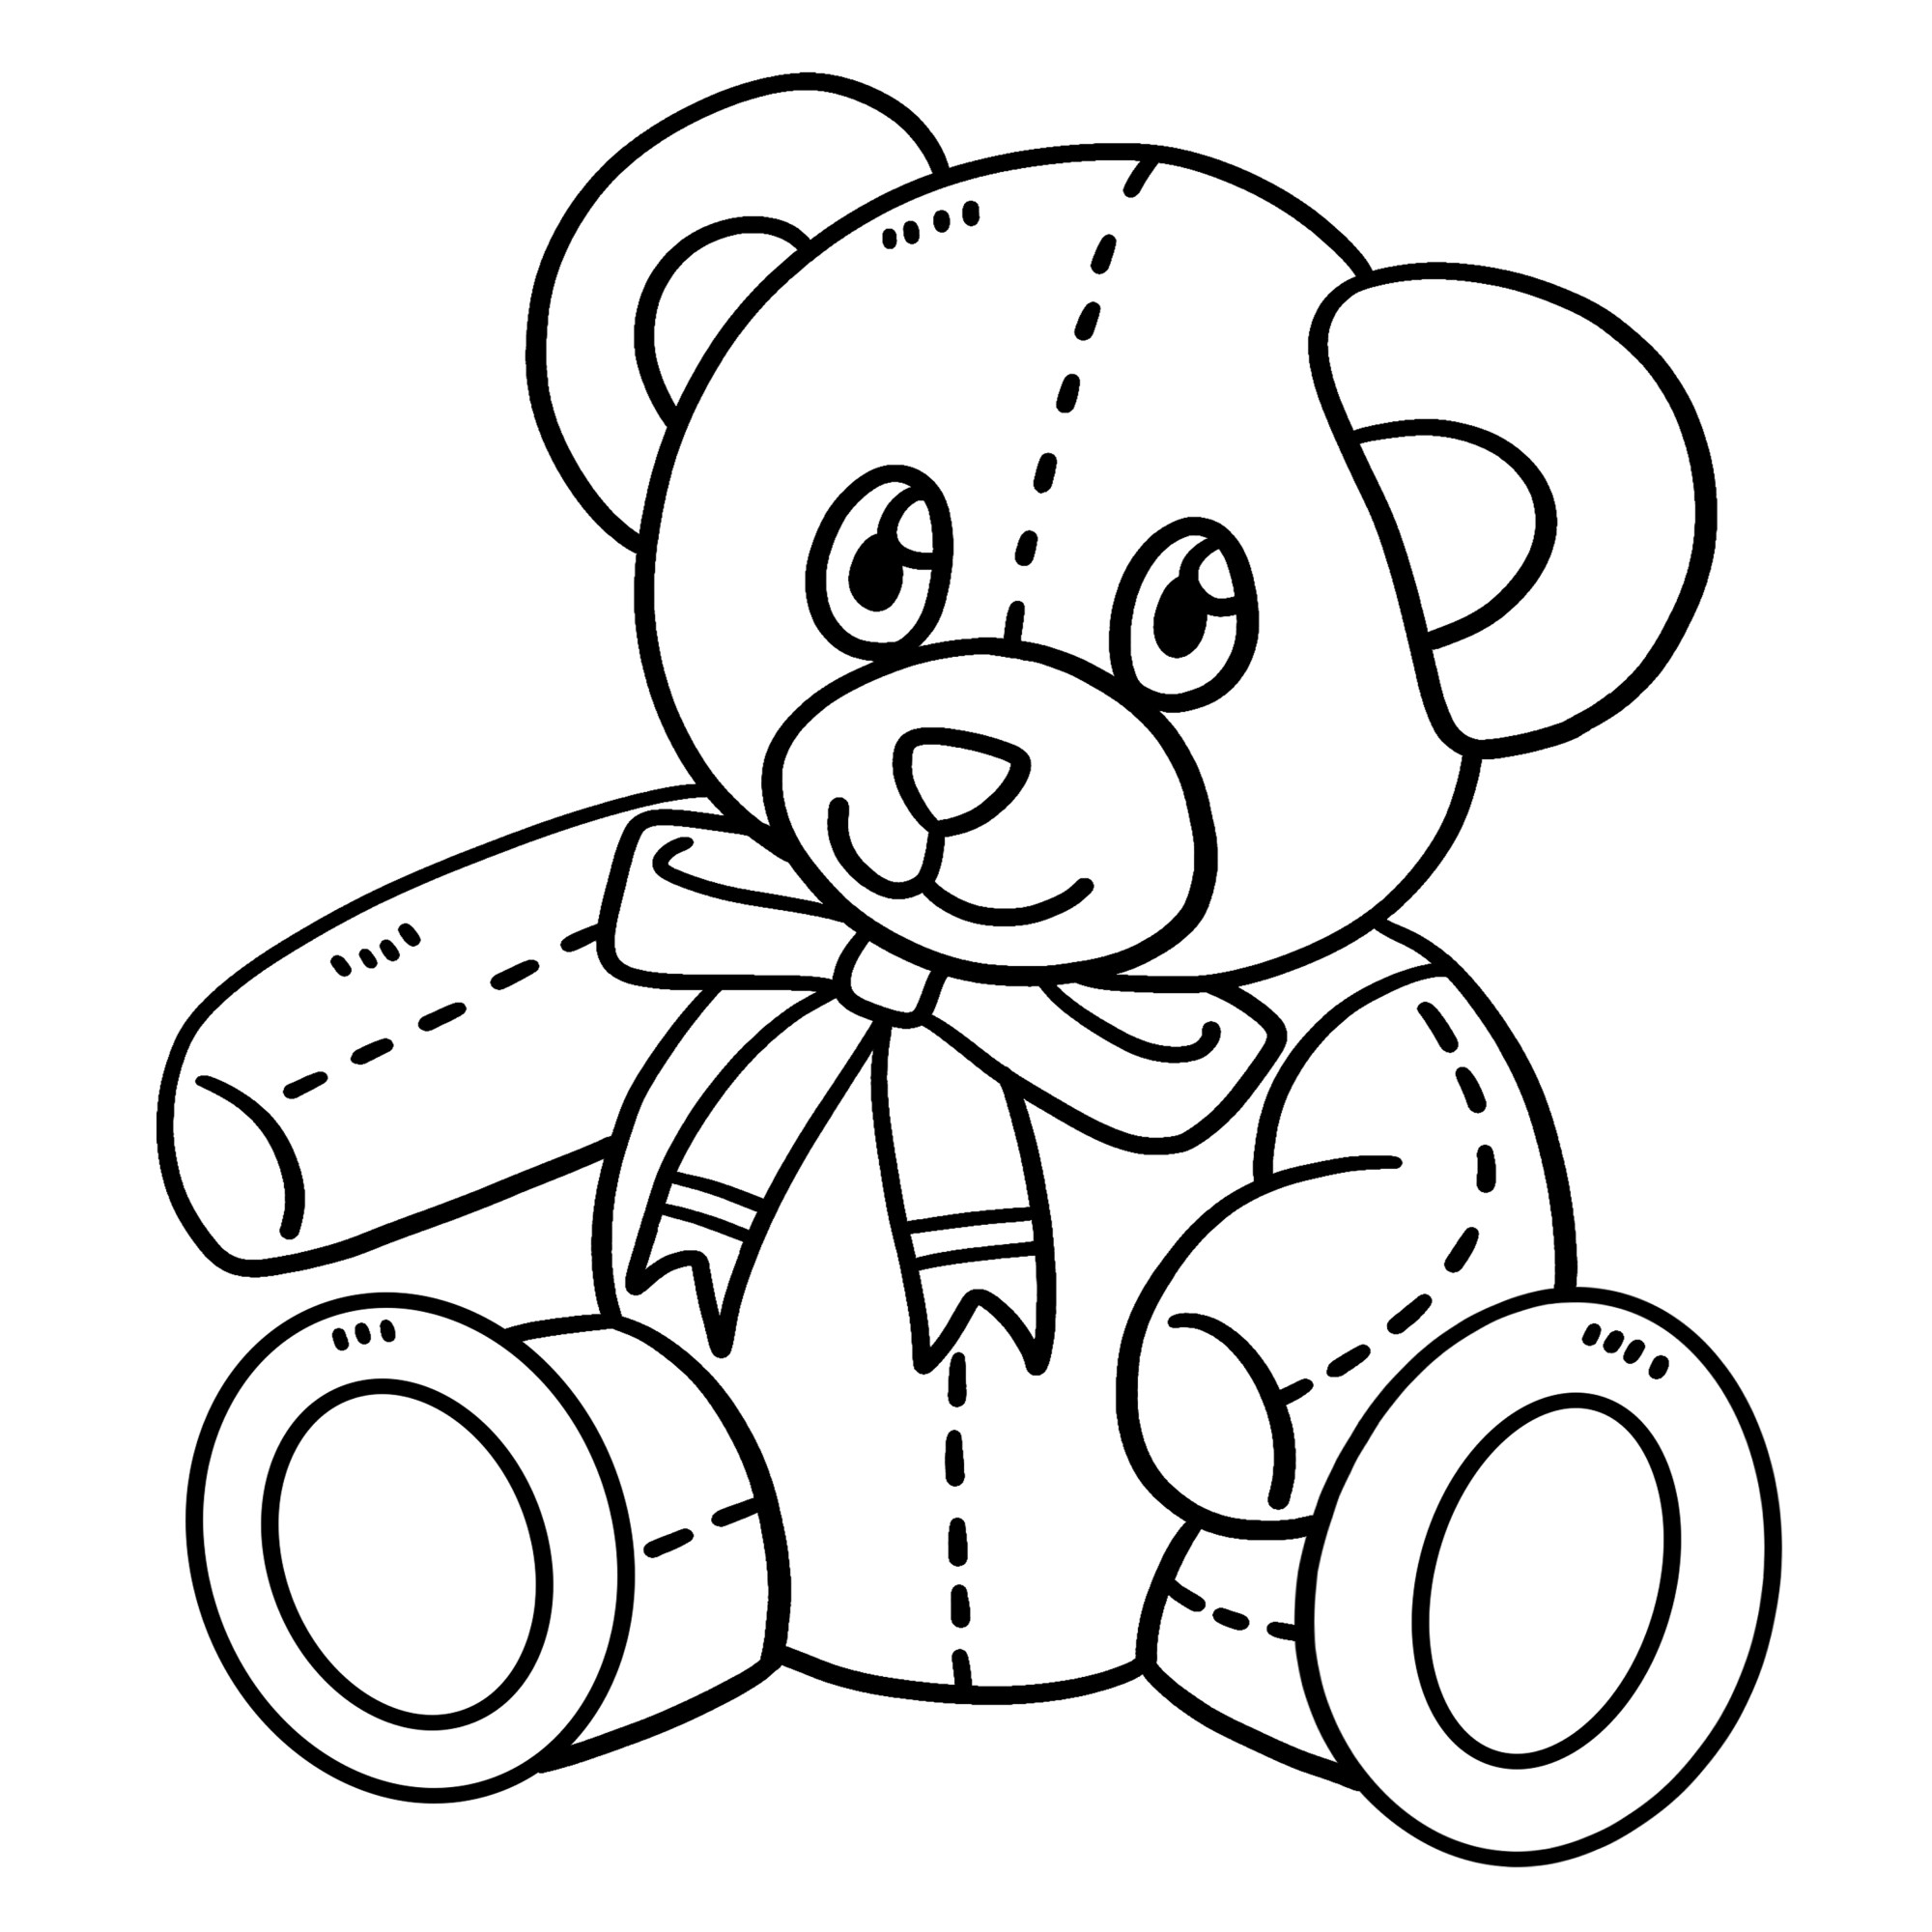 Раскраска для детей: мягкая игрушка медвежонок с бантиком